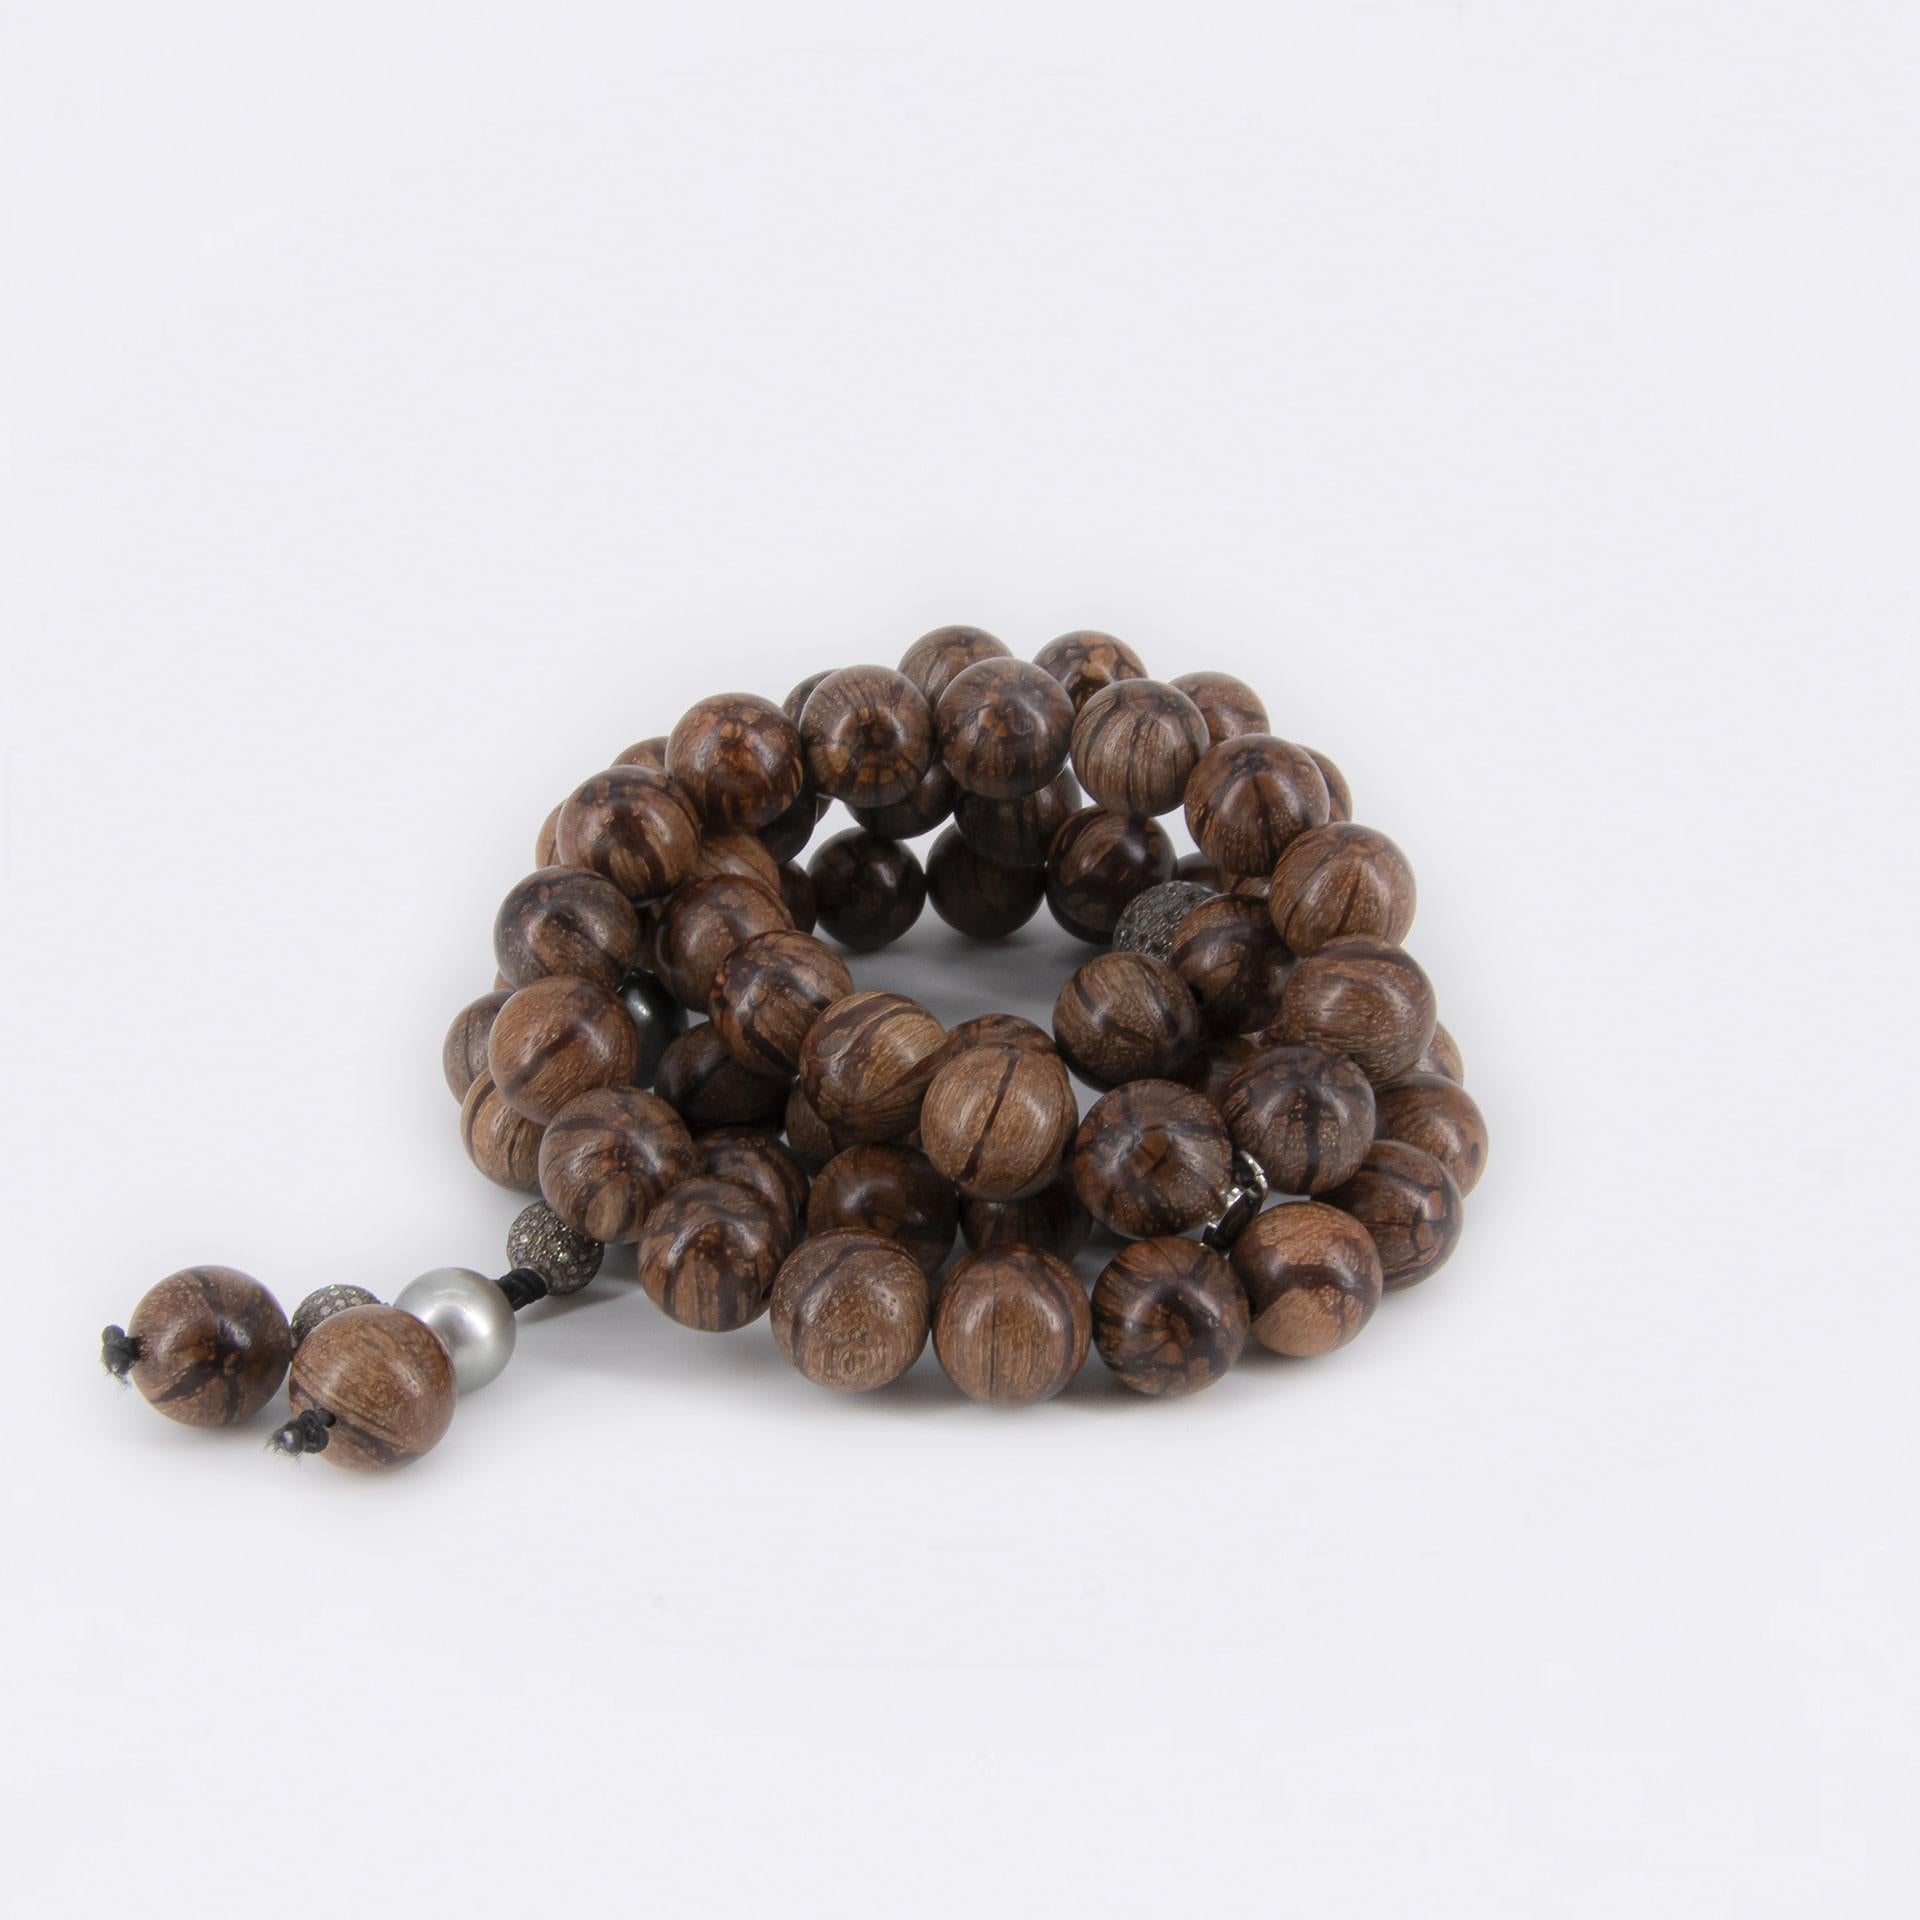 Ce magnifique collier peut être porté autour du cou et du poignet. 
Il est composé de perles en bois d'Abélia, de 2 perles pavées de diamants (12 mm), de 2 perles pavées de diamants (8 mm) en argent noirci et de 4 perles de Tahiti de différentes